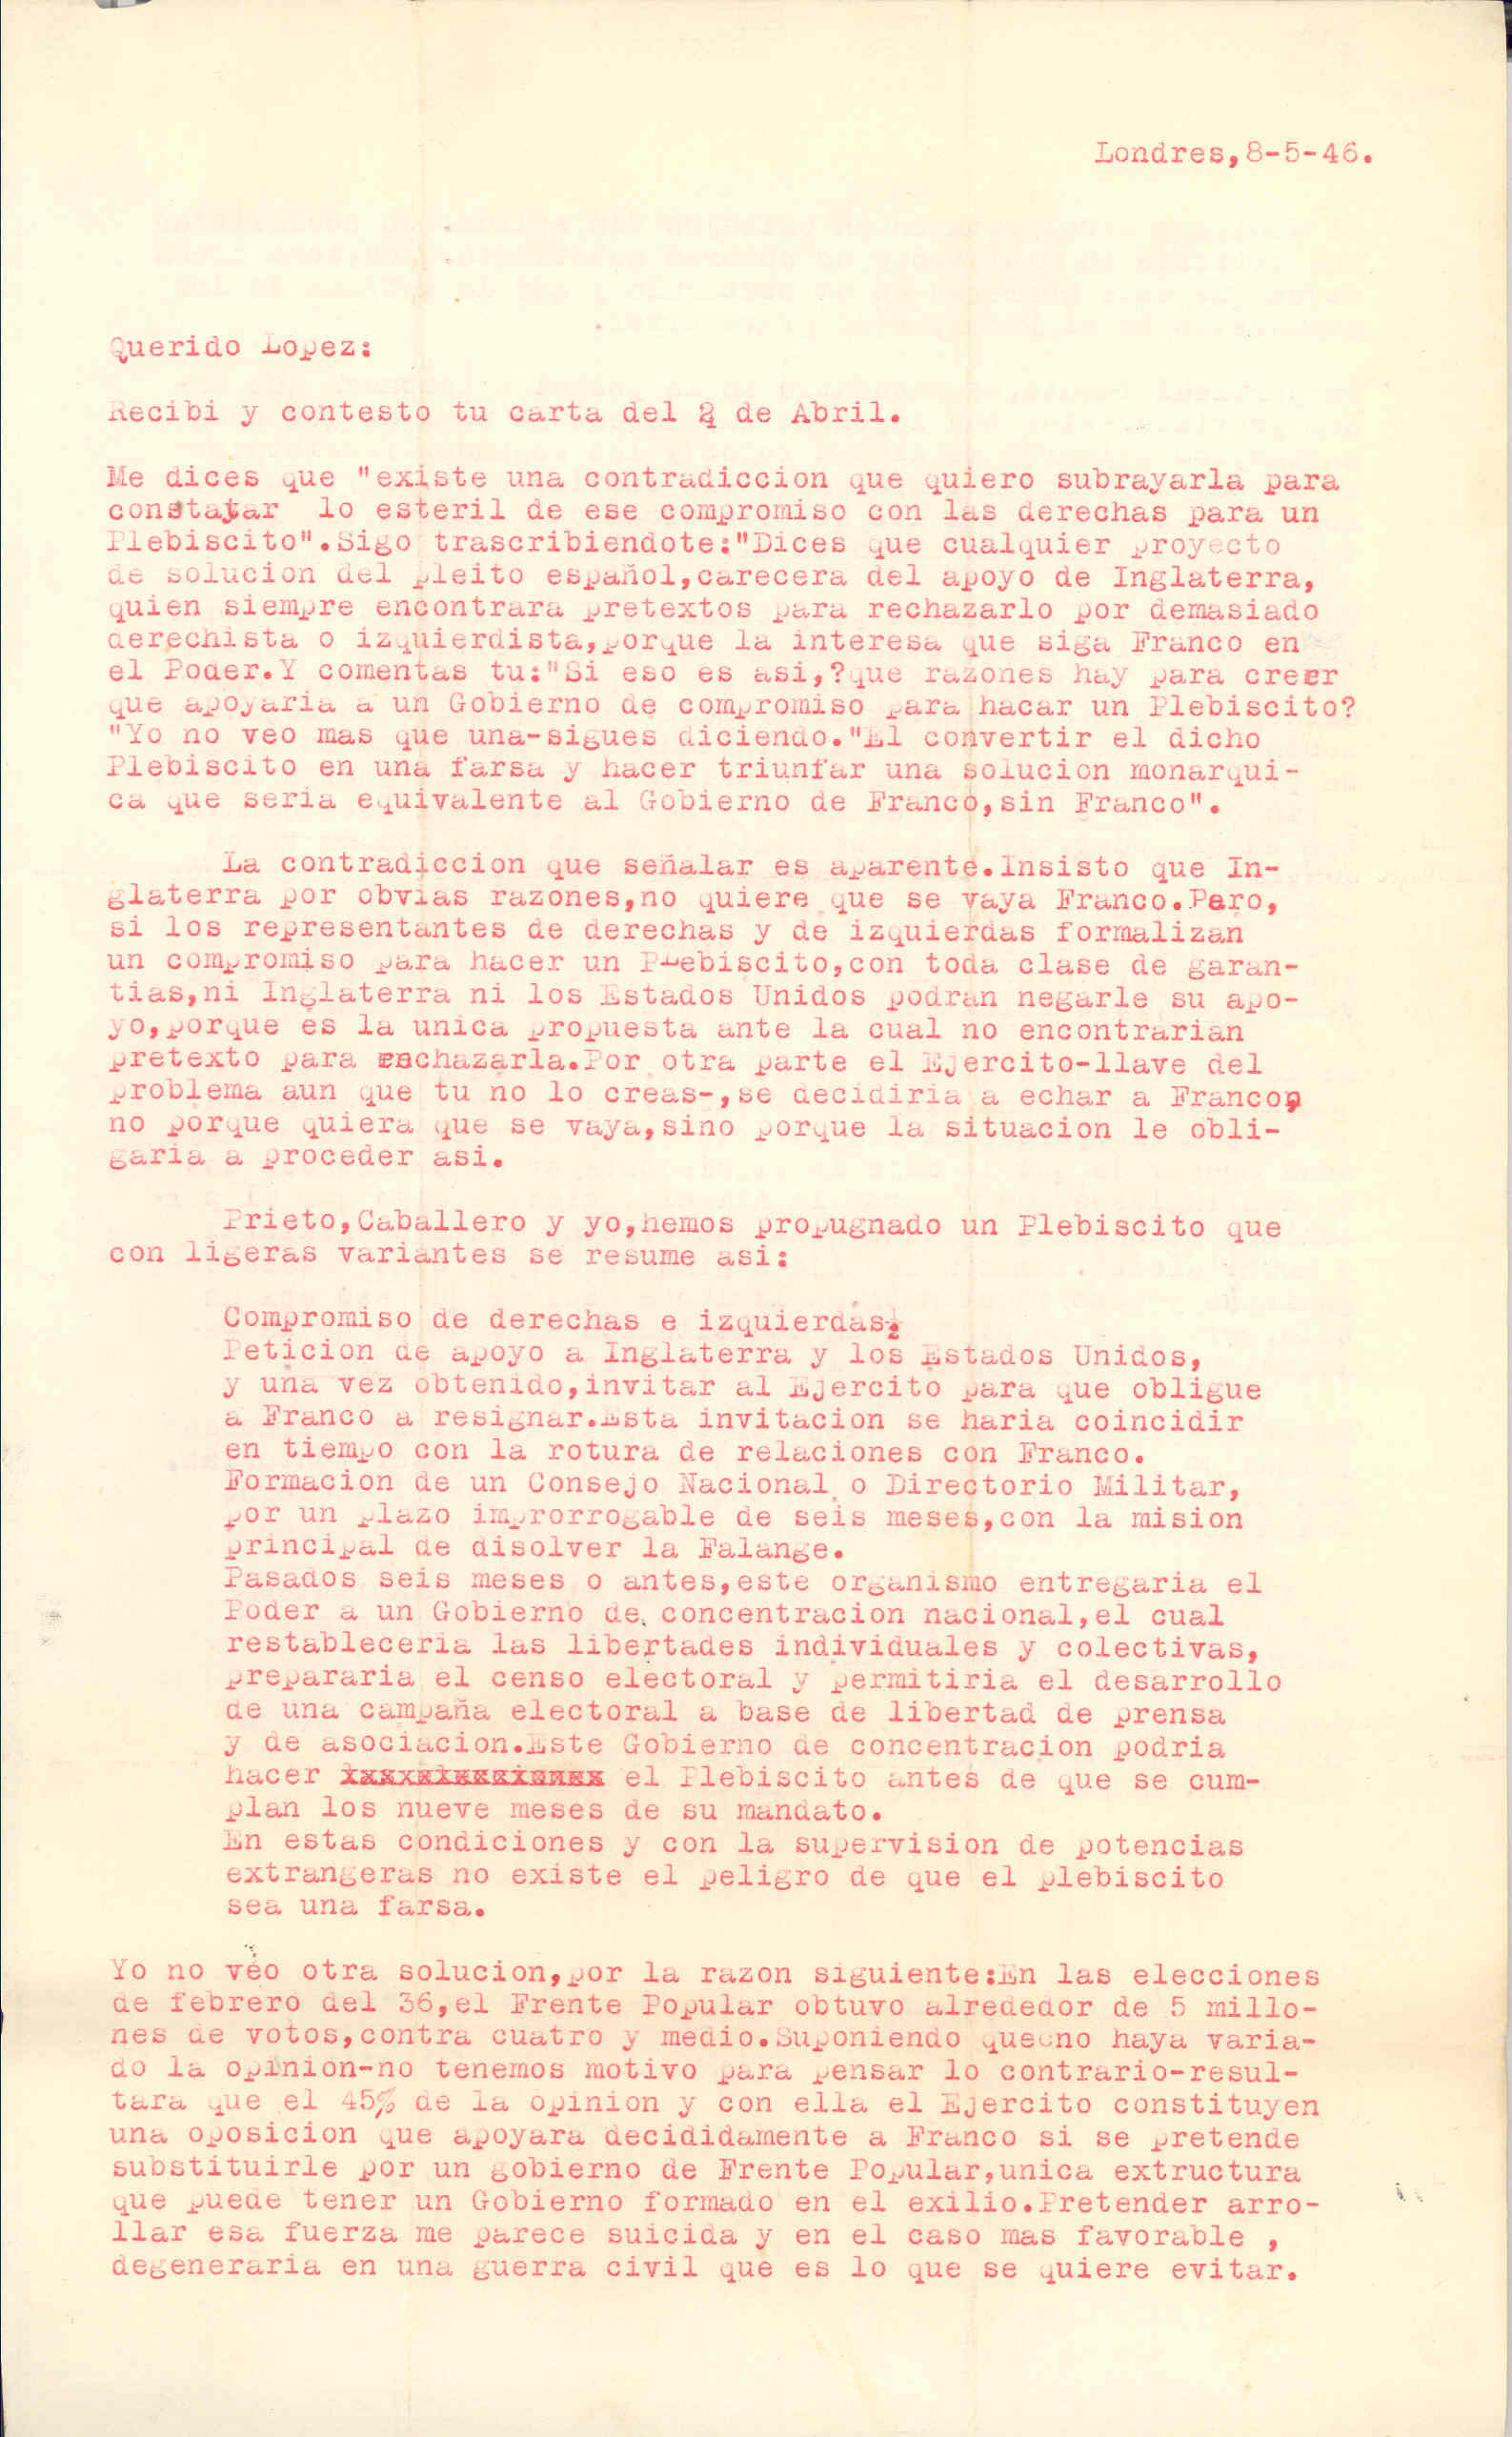 Carta de Segismundo Casado explicando que Gran Bretaña no quiere que se vaya Franco. Resume el plebiscito que propugnan Prieto, Caballero y él para un cambio de gobierno.Habla de la constitución de la ANFD en Londres.